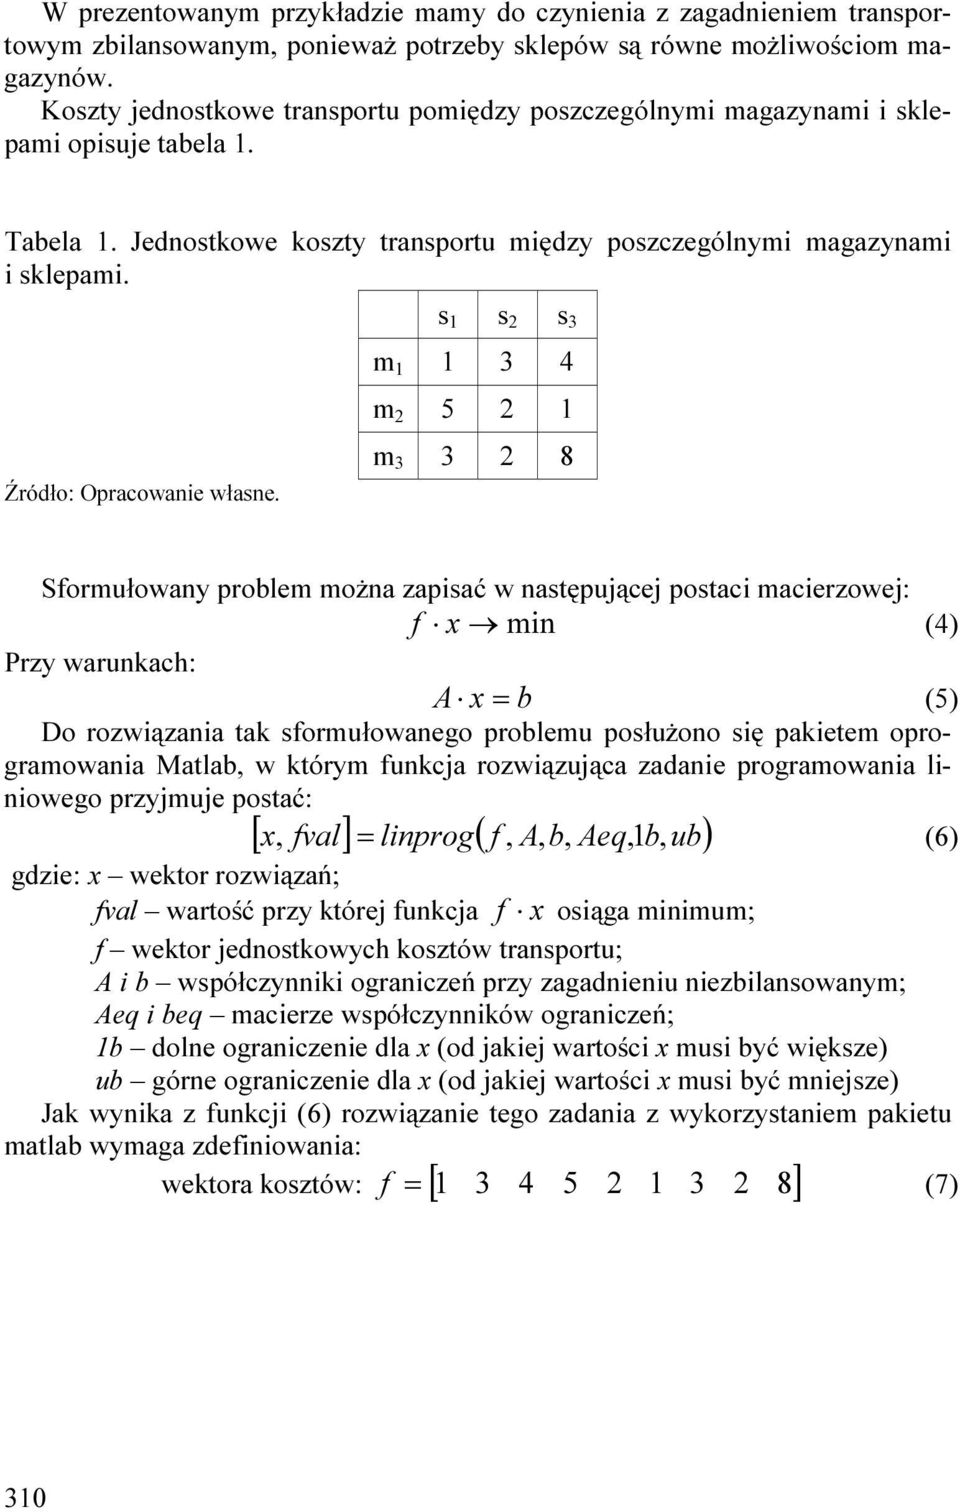 m 3 4 m 2 5 2 m 3 3 2 8 Sformułowany problem można zapsać w następuące postac macerzowe: f x mn (4) Przy warunkach: A x = b (5) Do rozwązana tak sformułowanego problemu posłużono sę paketem